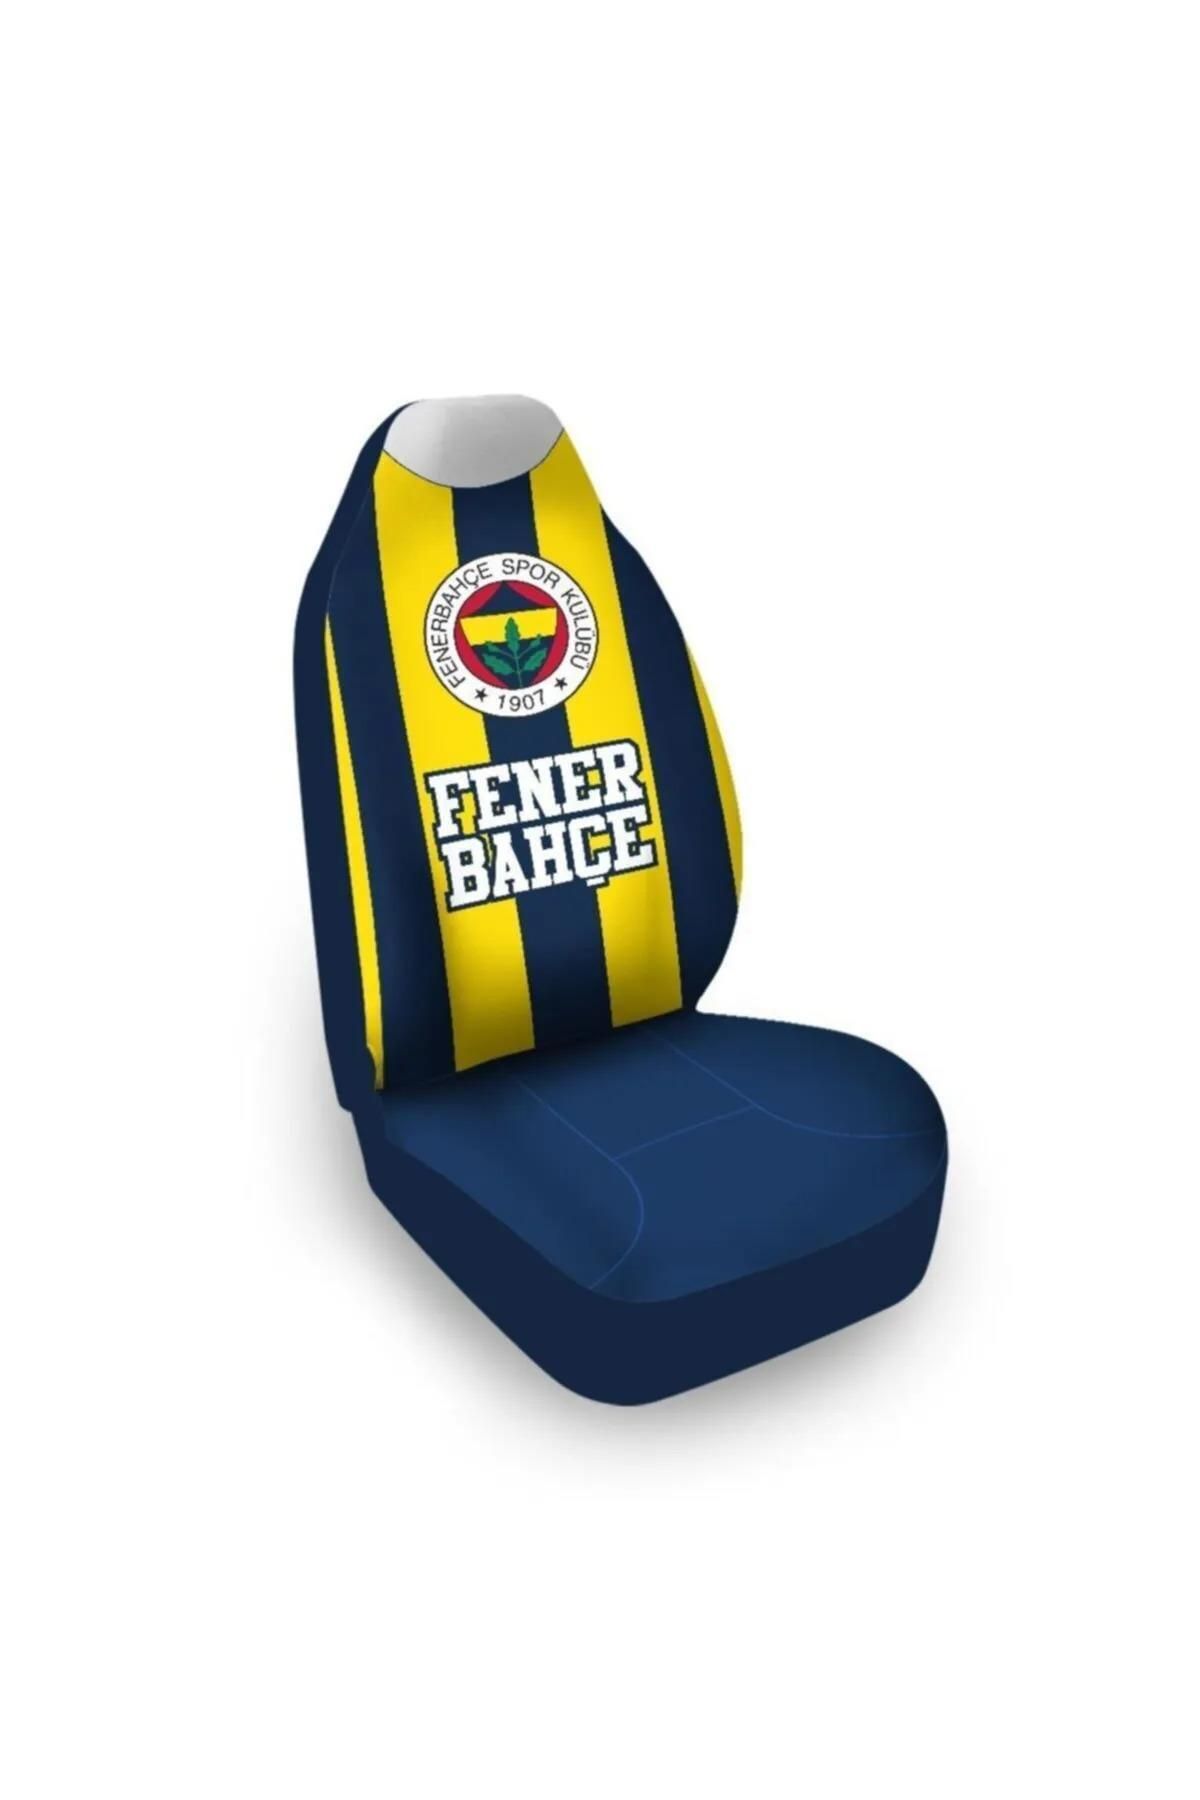 Fenerbahçe Lisanslı Tekli Araba Koltuk Kılıfı